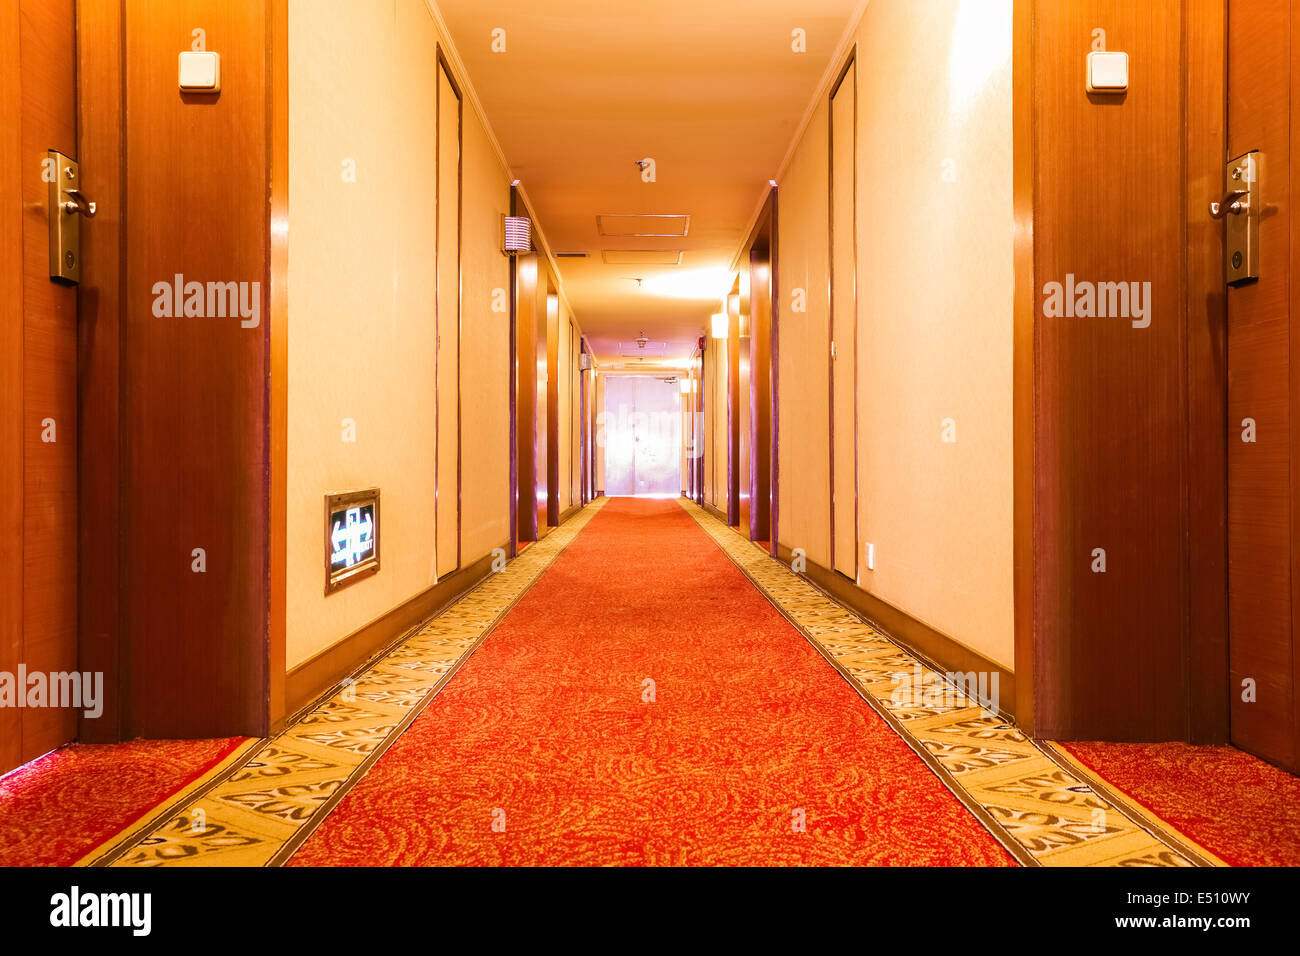 hotel corridor Stock Photo